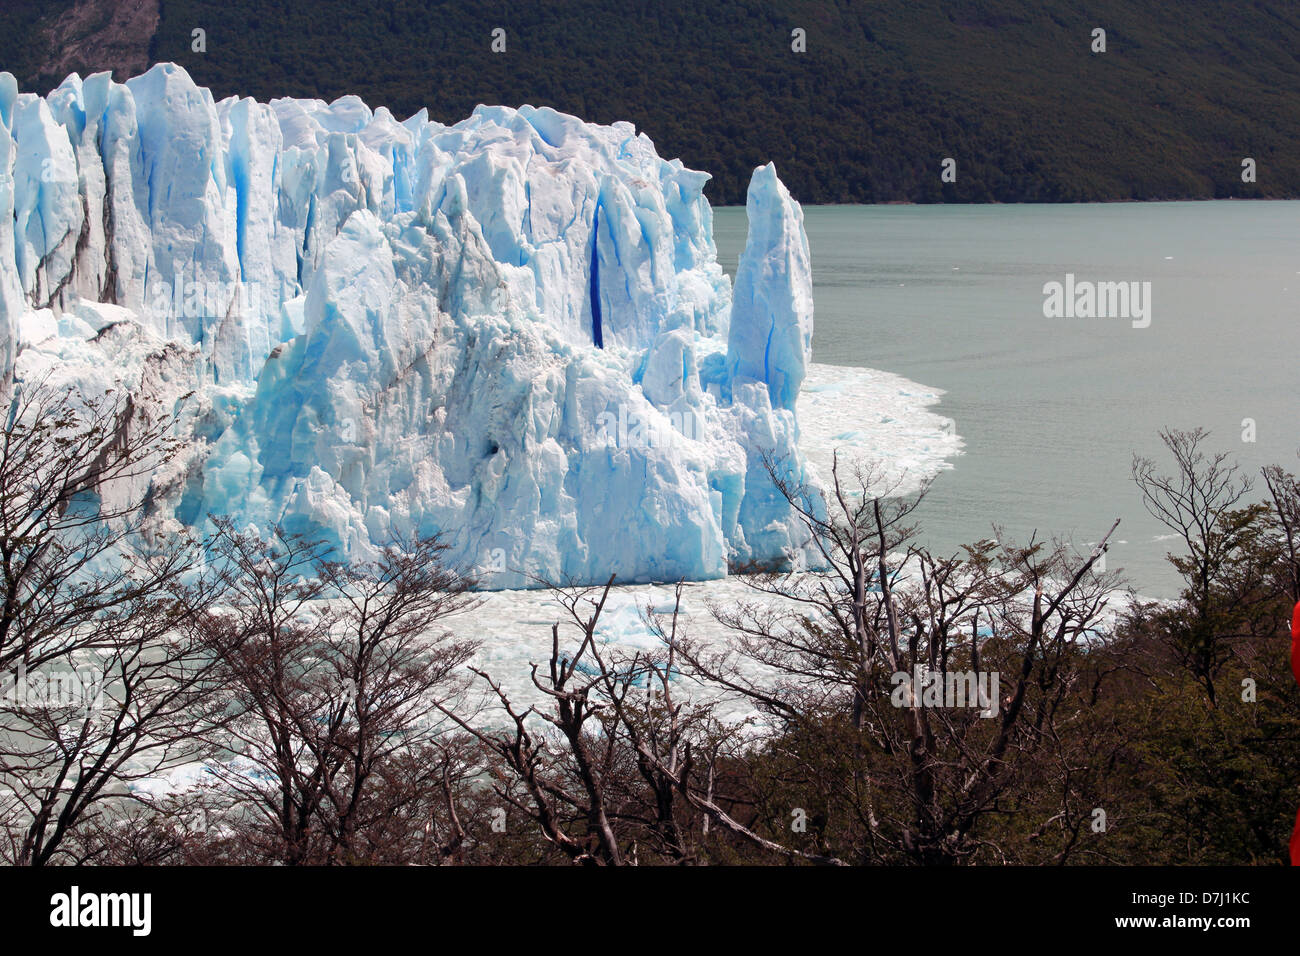 Argentinien Patagonien Patagonia Perito Moreno Glacier glaciar in national park Los Glaciares Stock Photo